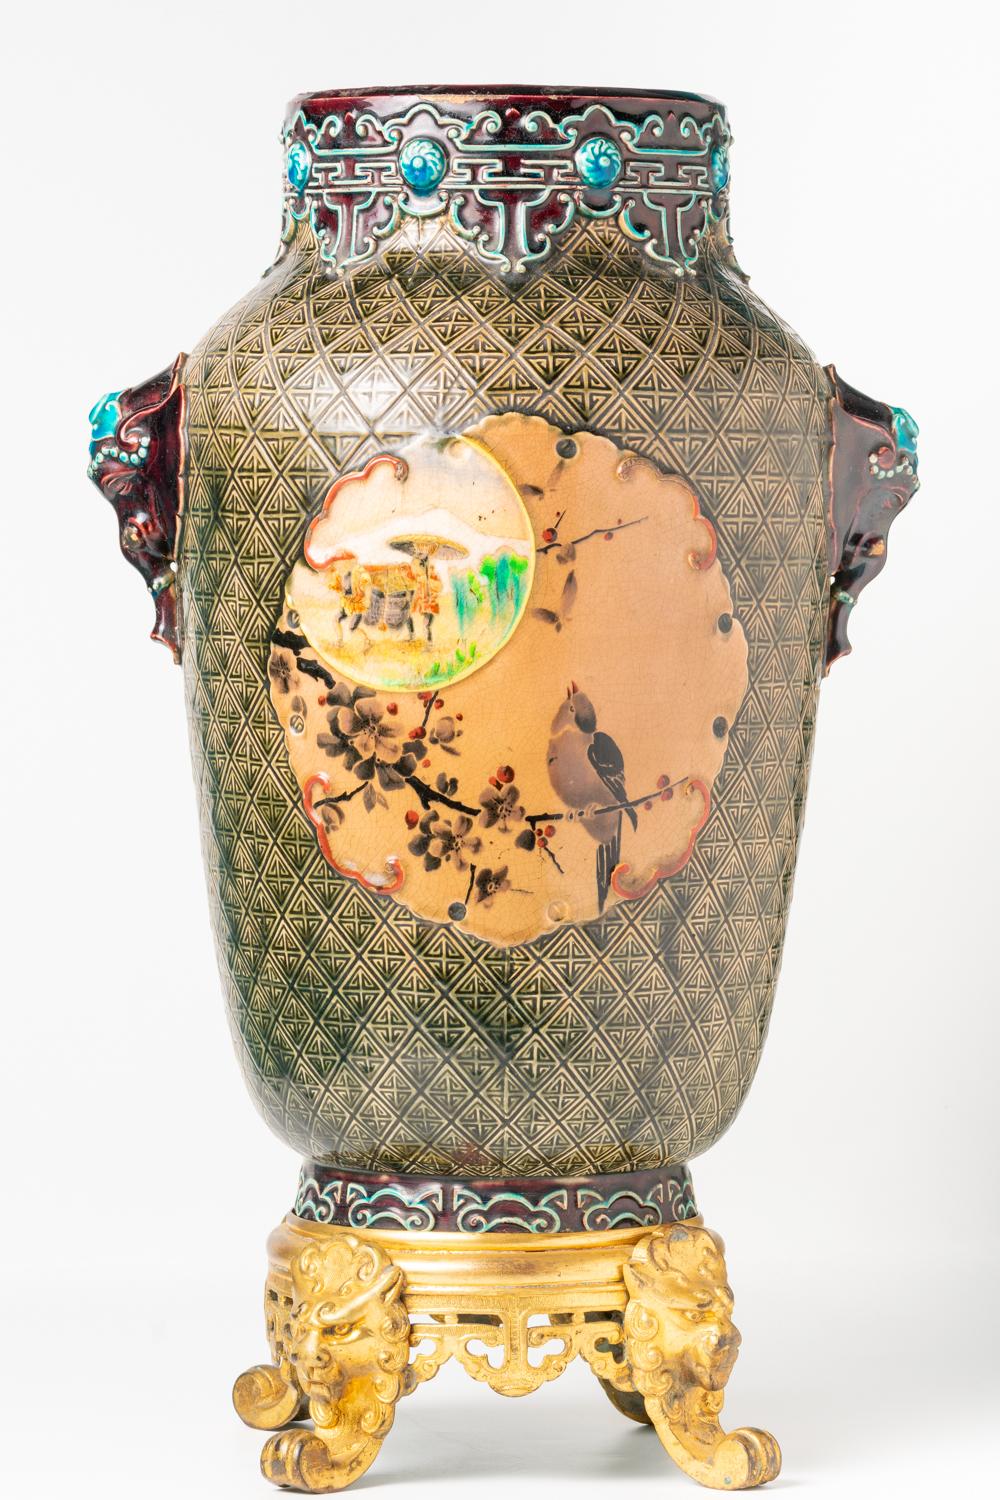 Ce vase français rare, impressionnant et de grande taille a été réalisé à Bordeaux par la société Jules Vieillard & Co, de renommée mondiale, et date des années 1880-1895, période à laquelle les techniques et les designs favoris de la société de